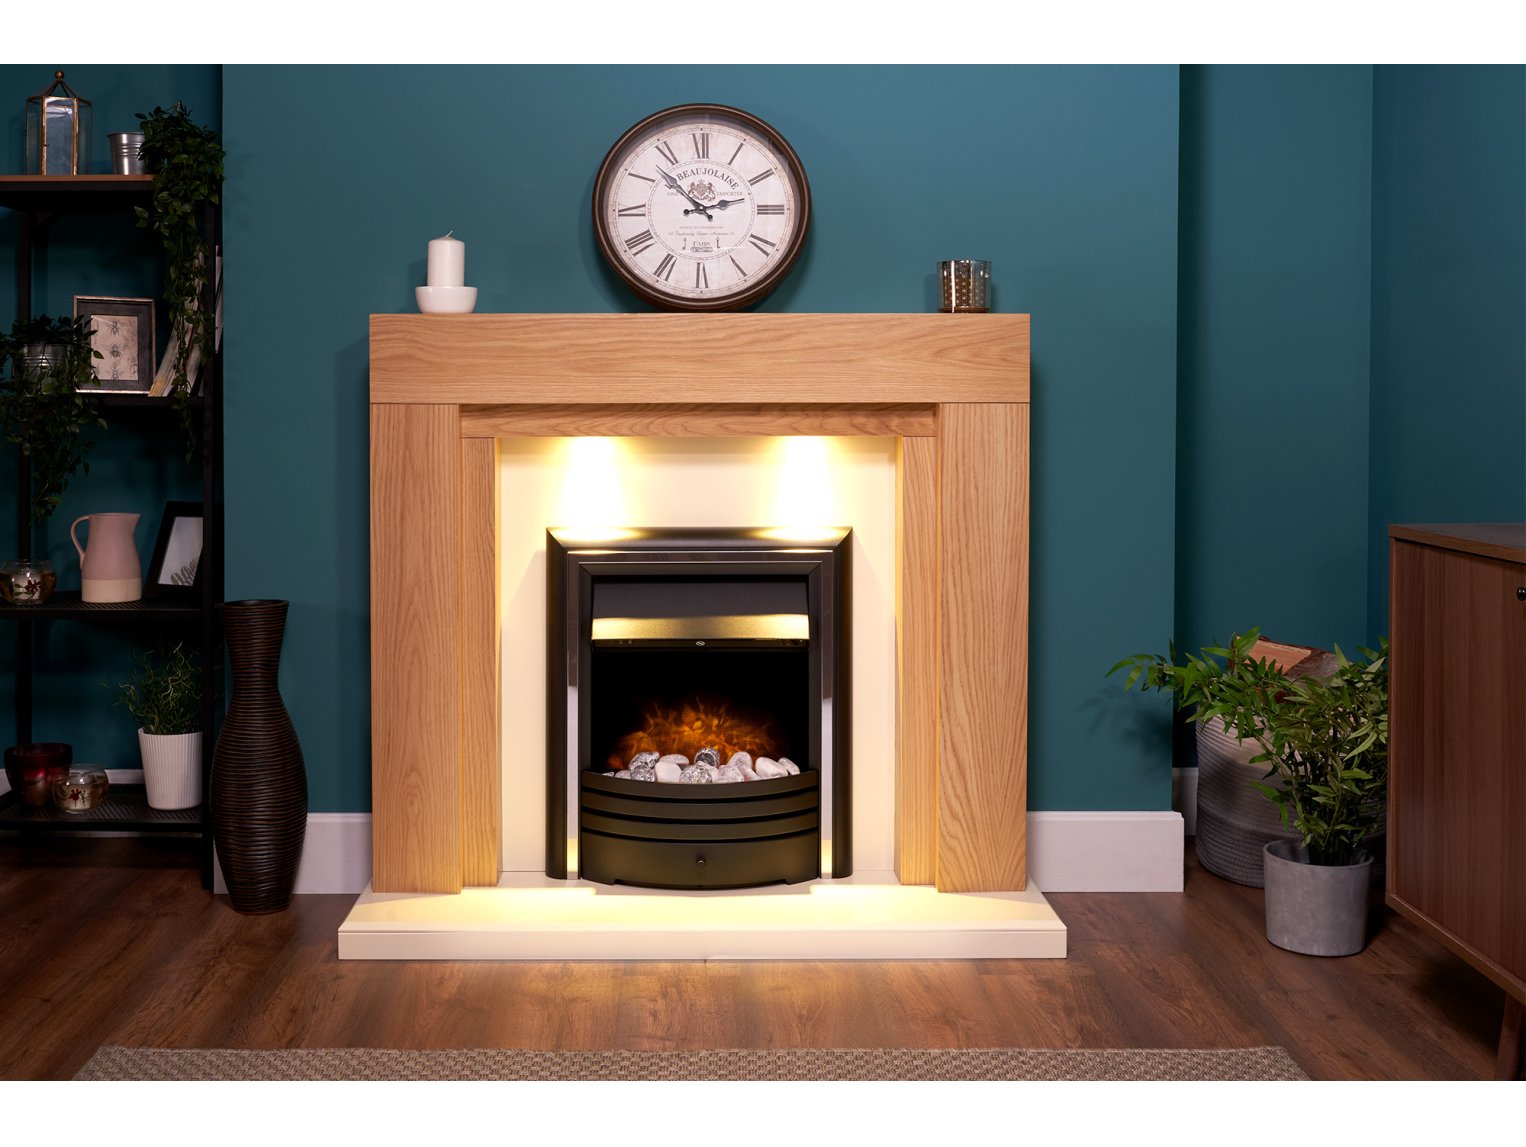 Adam Beaumont Fireplace Suite Oak & Cream + Cambridge 6-in-1 Electric Fire Black, 48"